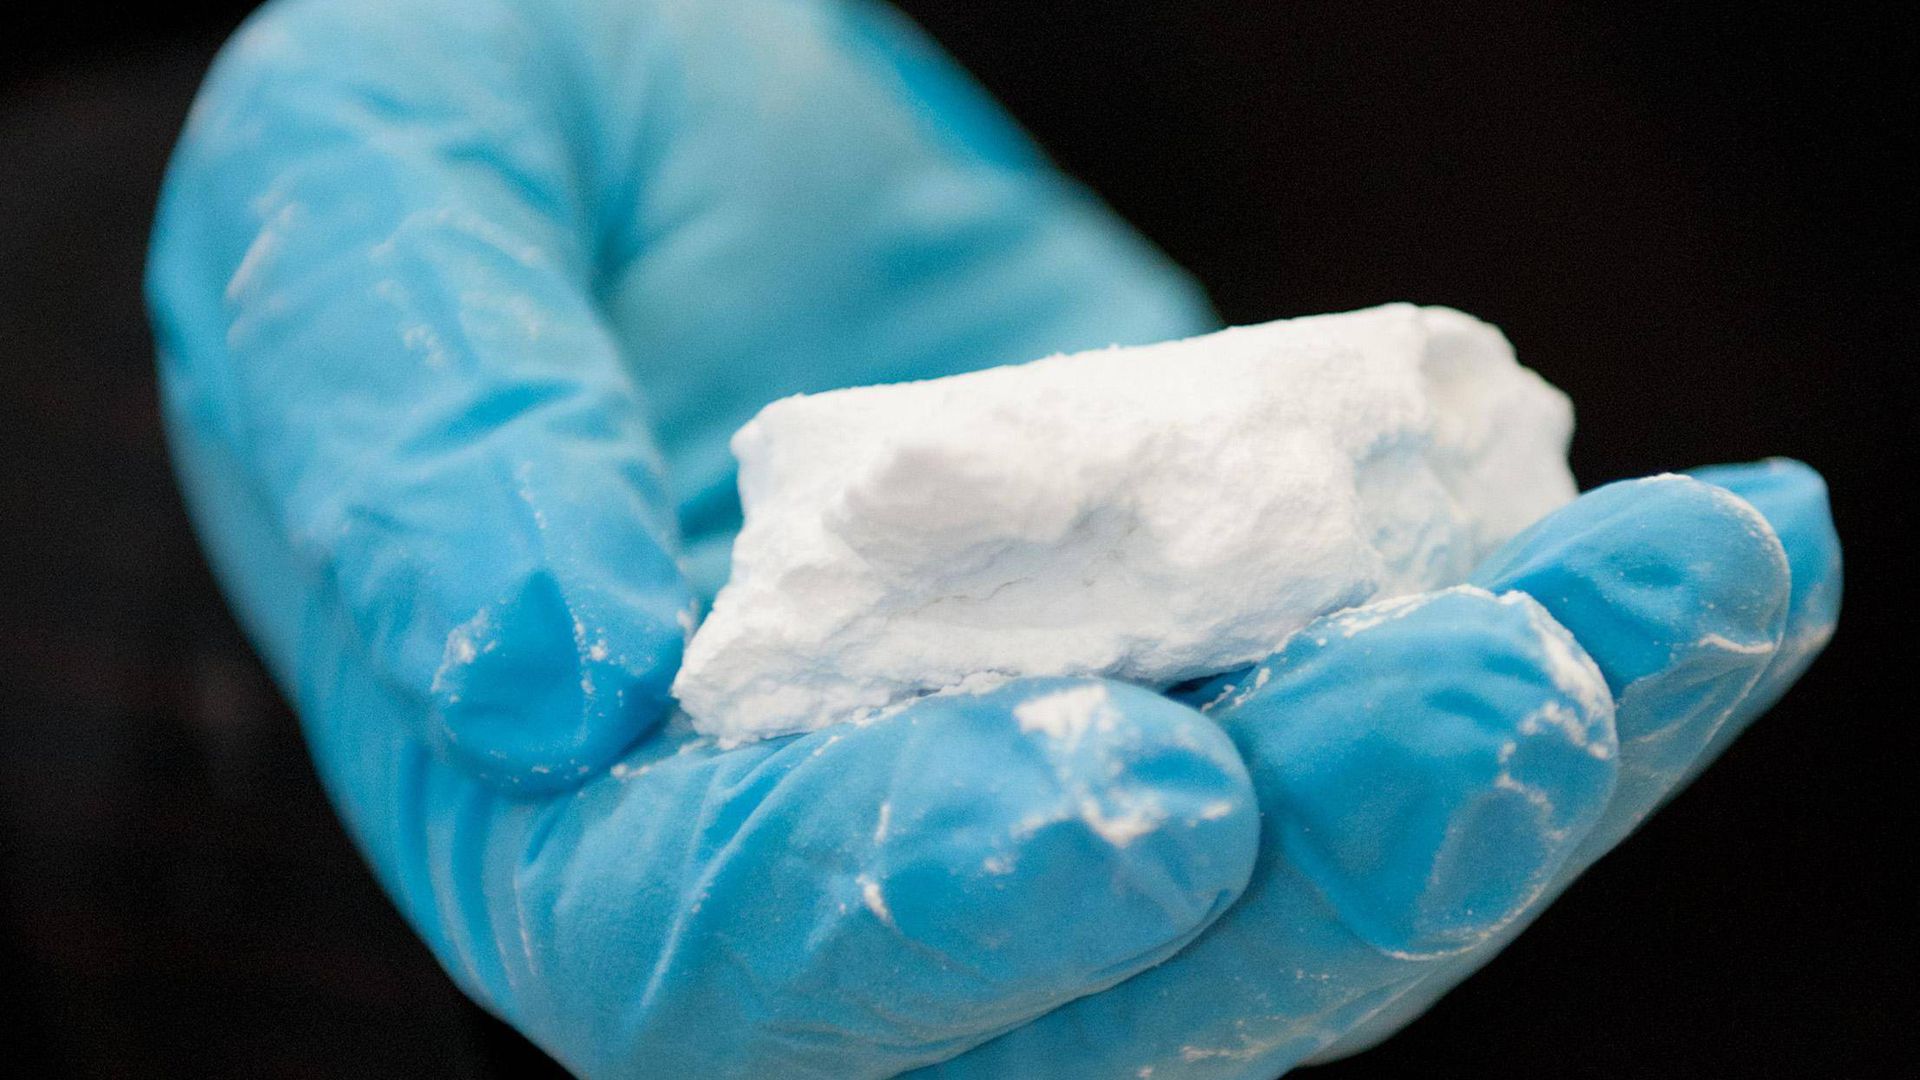 In Wörth wurden 300 Kilo Kokain gefunden. Foto: Christian Charisius/Archiv